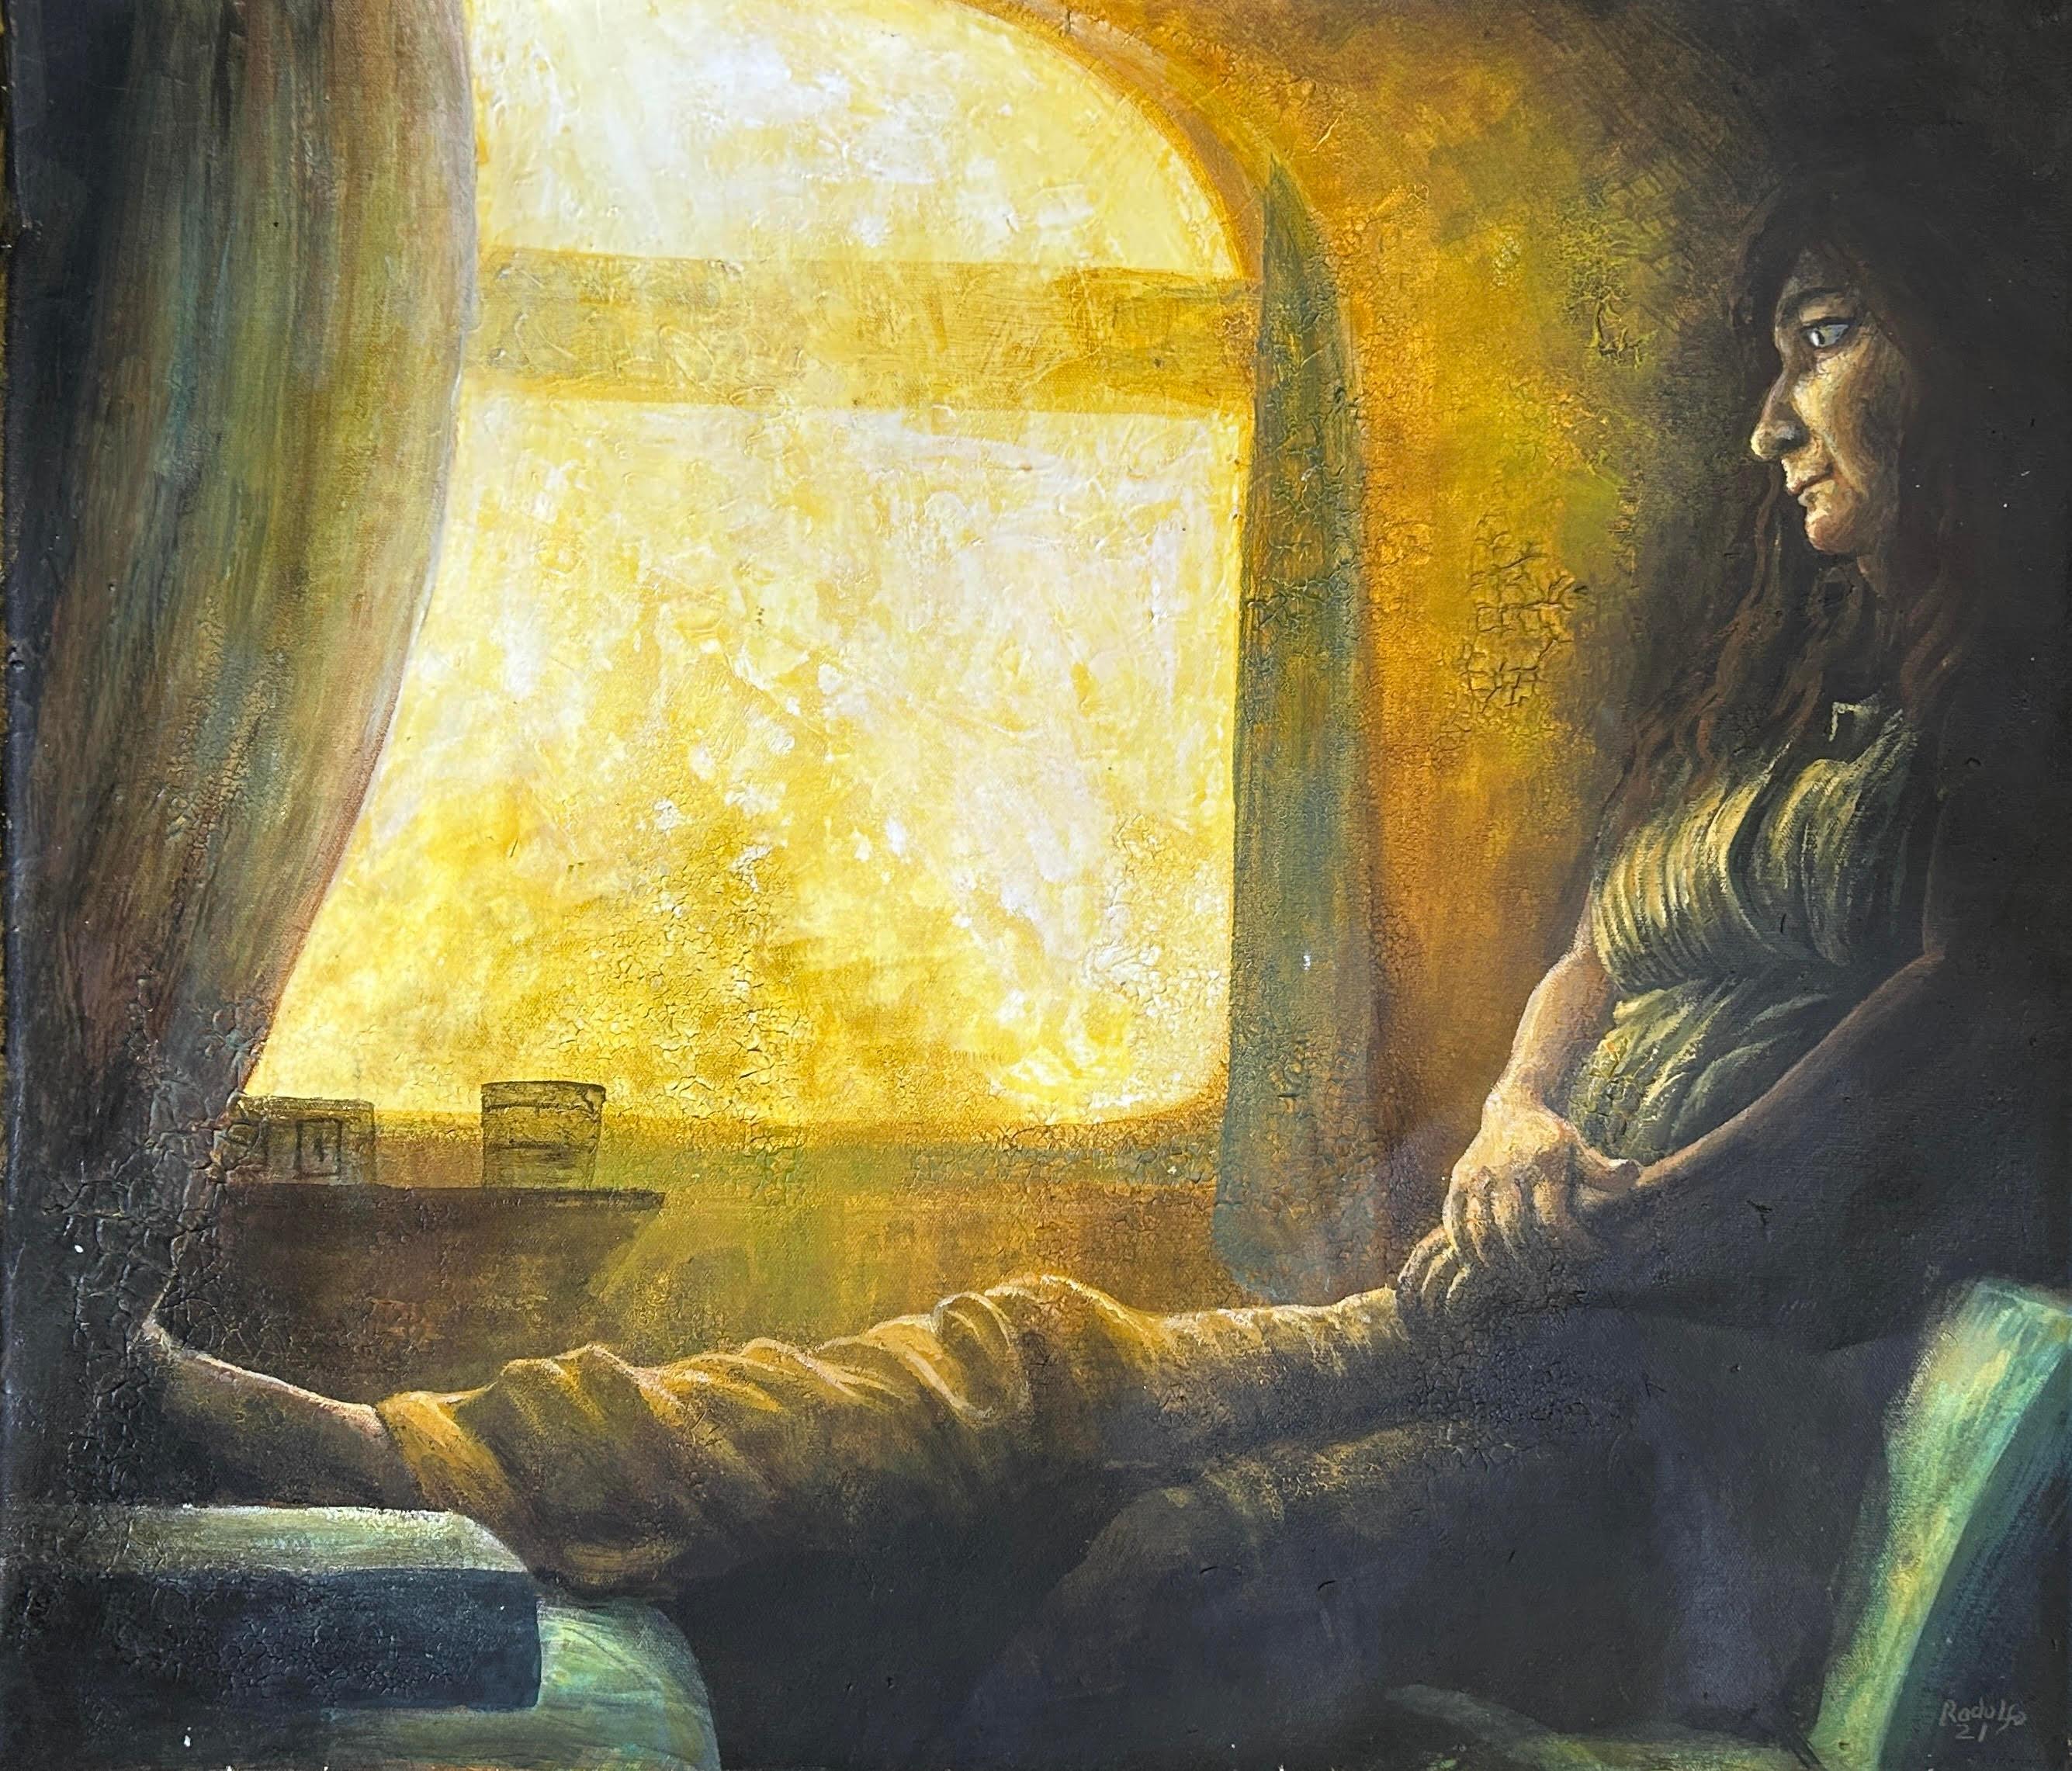 Peinture sur toile de l'Inde - Réalisme surréaliste - Portrait de Tender en train au clair du soleil